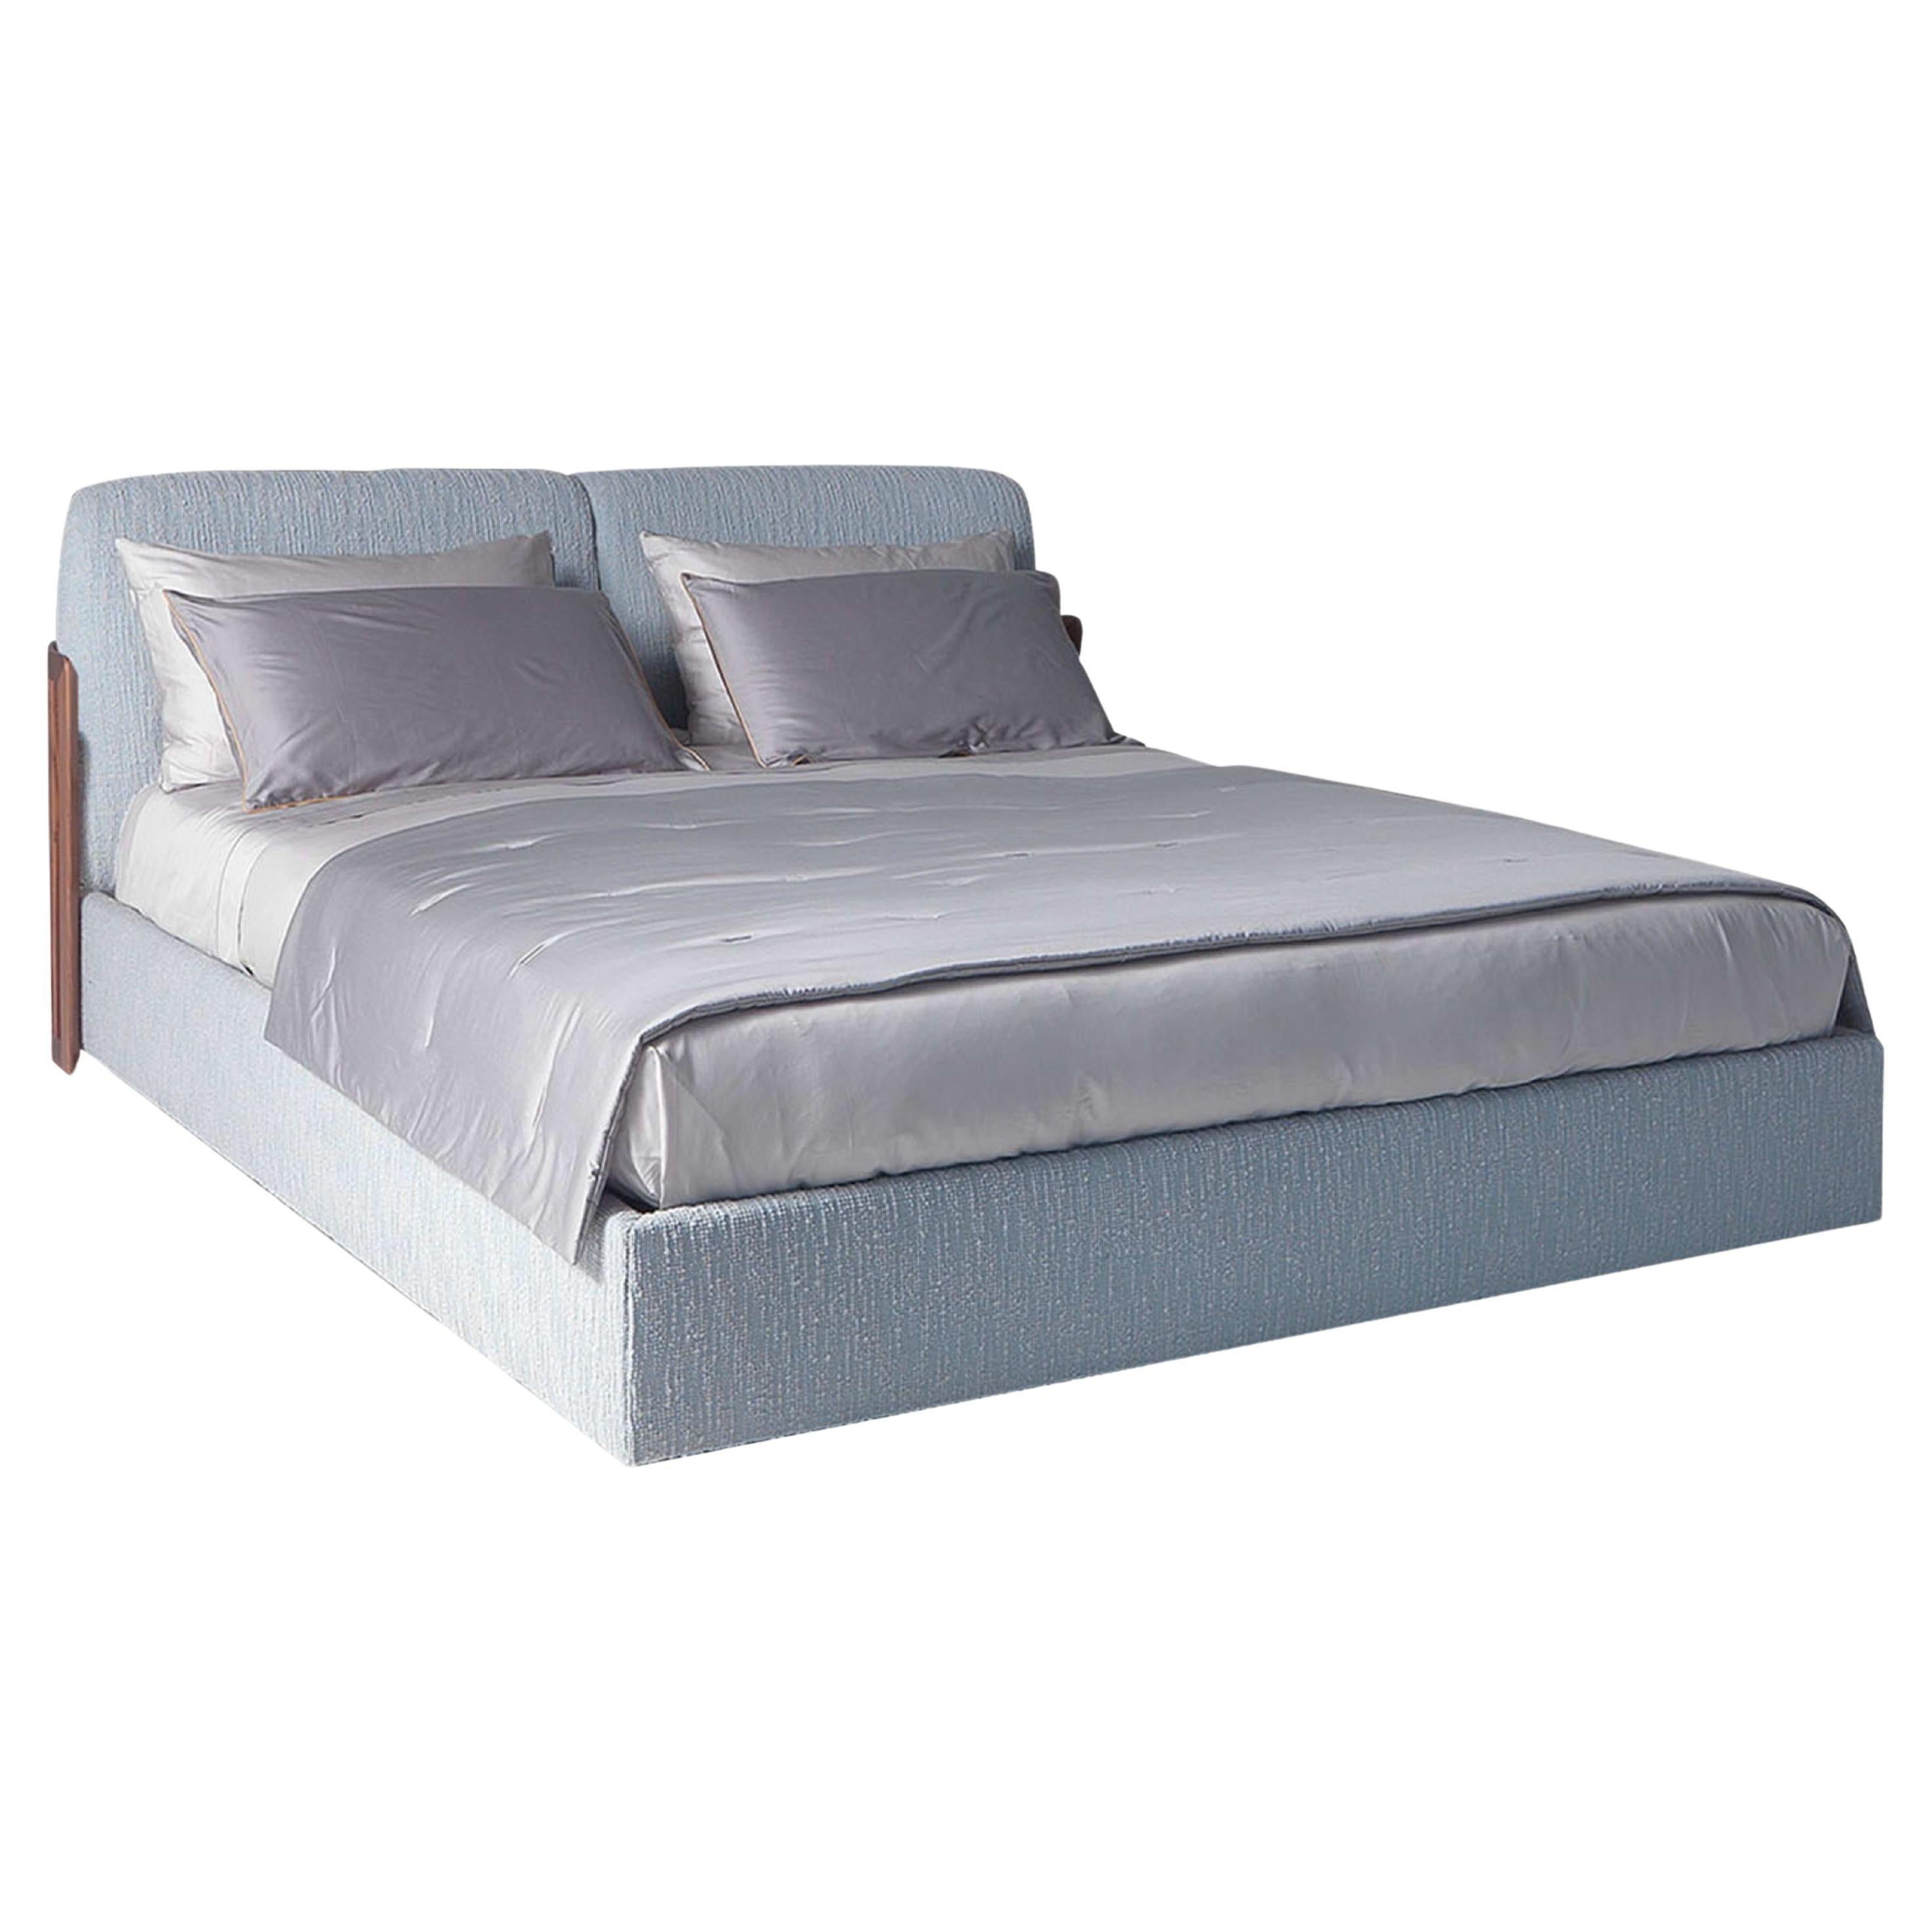 Italo Donatello Double Bed For Sale